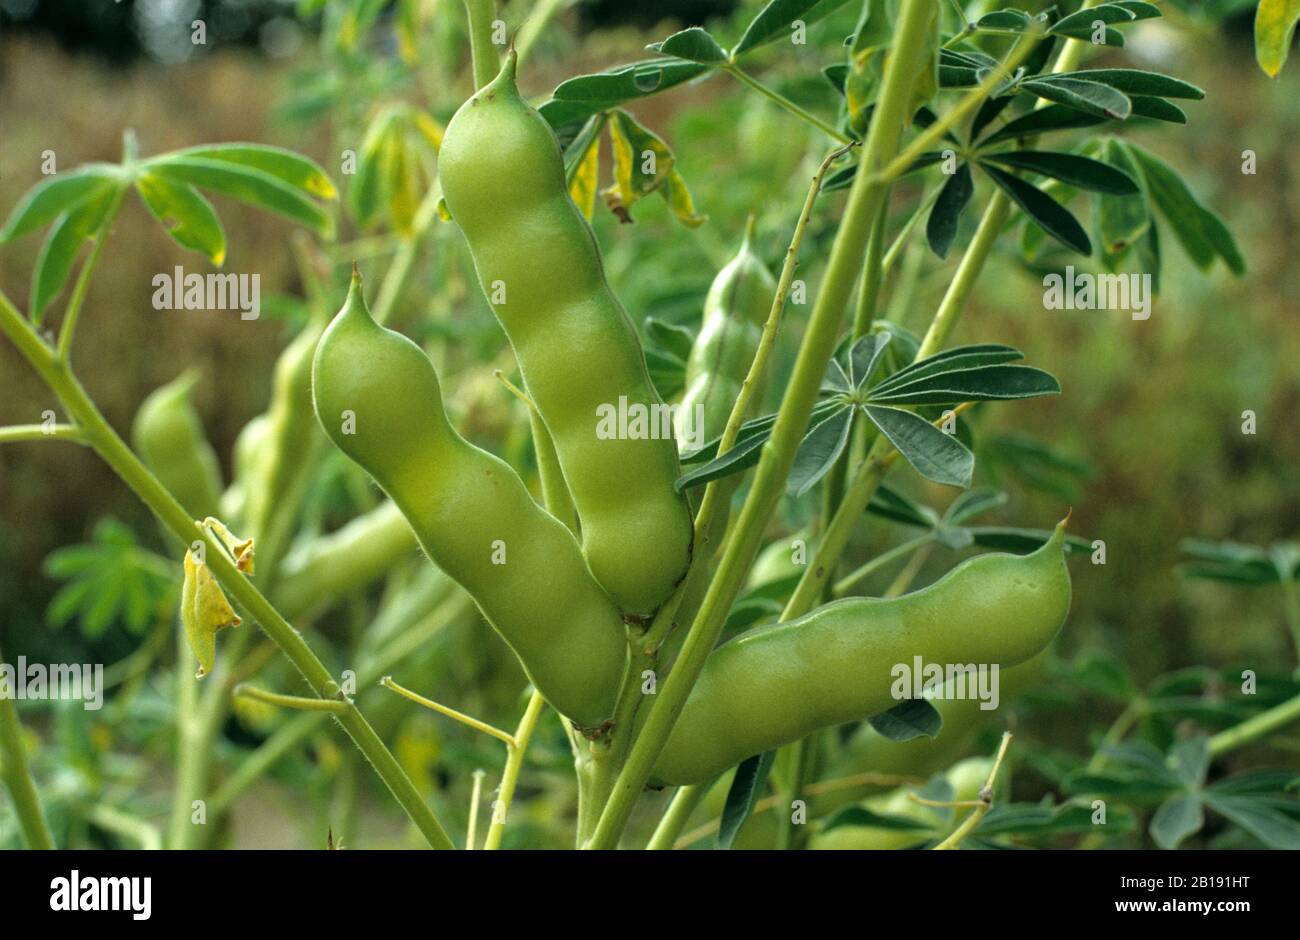 Ein Fruchtlupin (Lupinus albus) reifen Hülsen. Hülsenfrüchte können als eiweißreiche Viehfutter oder zum Kochen verwendet werden Stockfoto